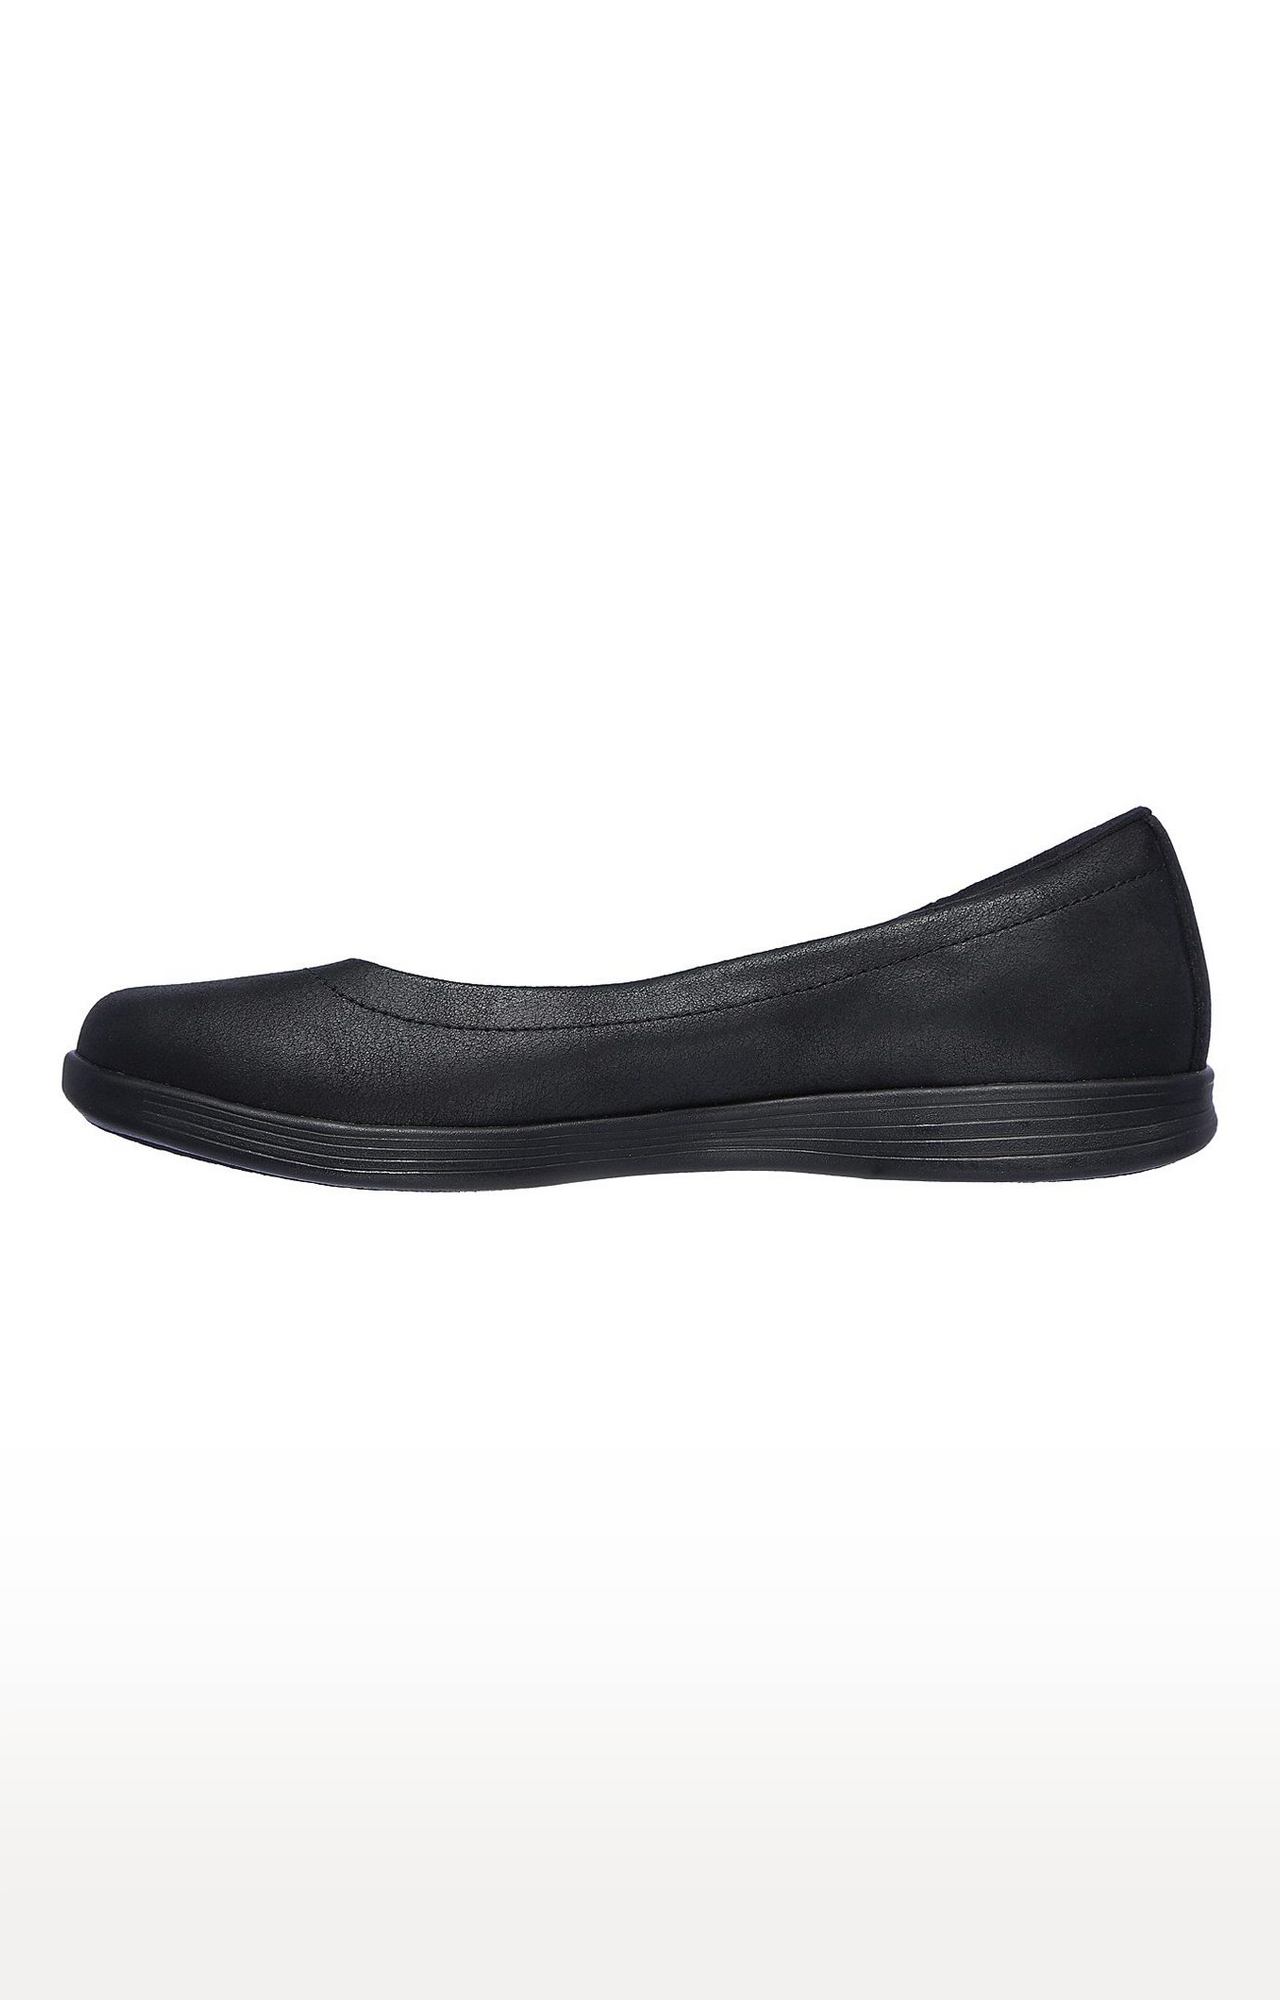 Skechers | Skechers Womens ON-THE-GO DREAMY NIGHTOUT BLACK Walking Shoes 2